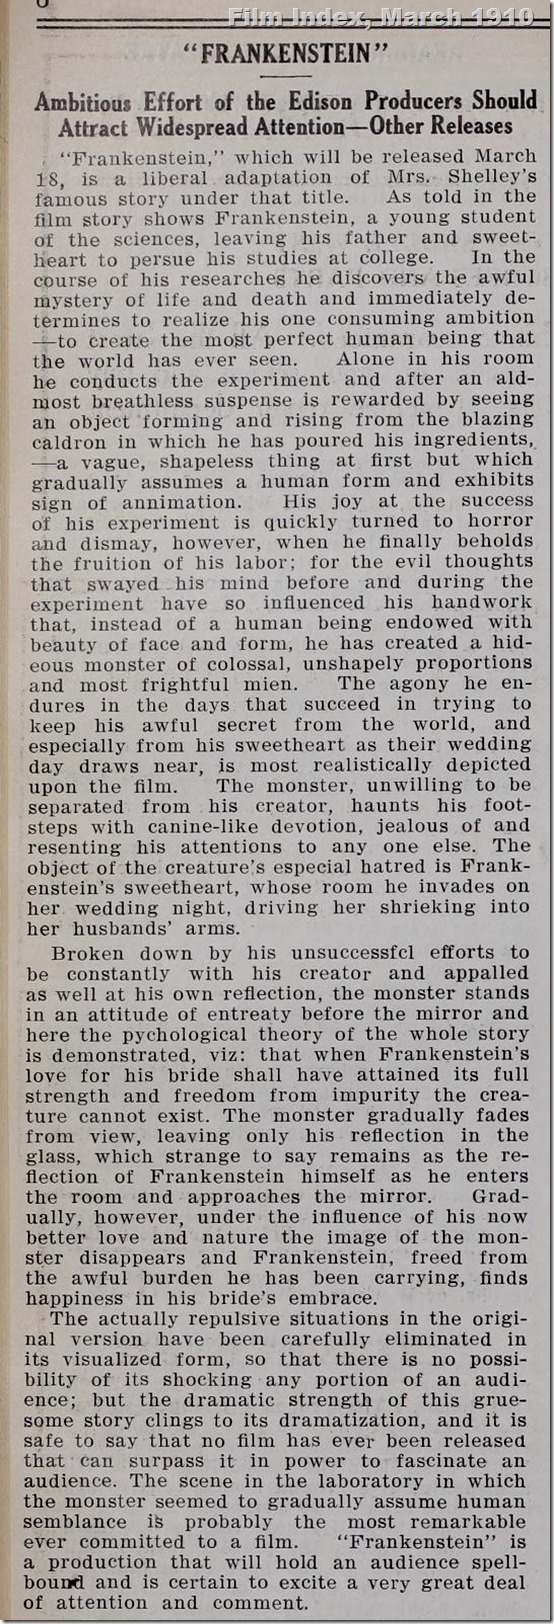 Film Index, March 12, 1910